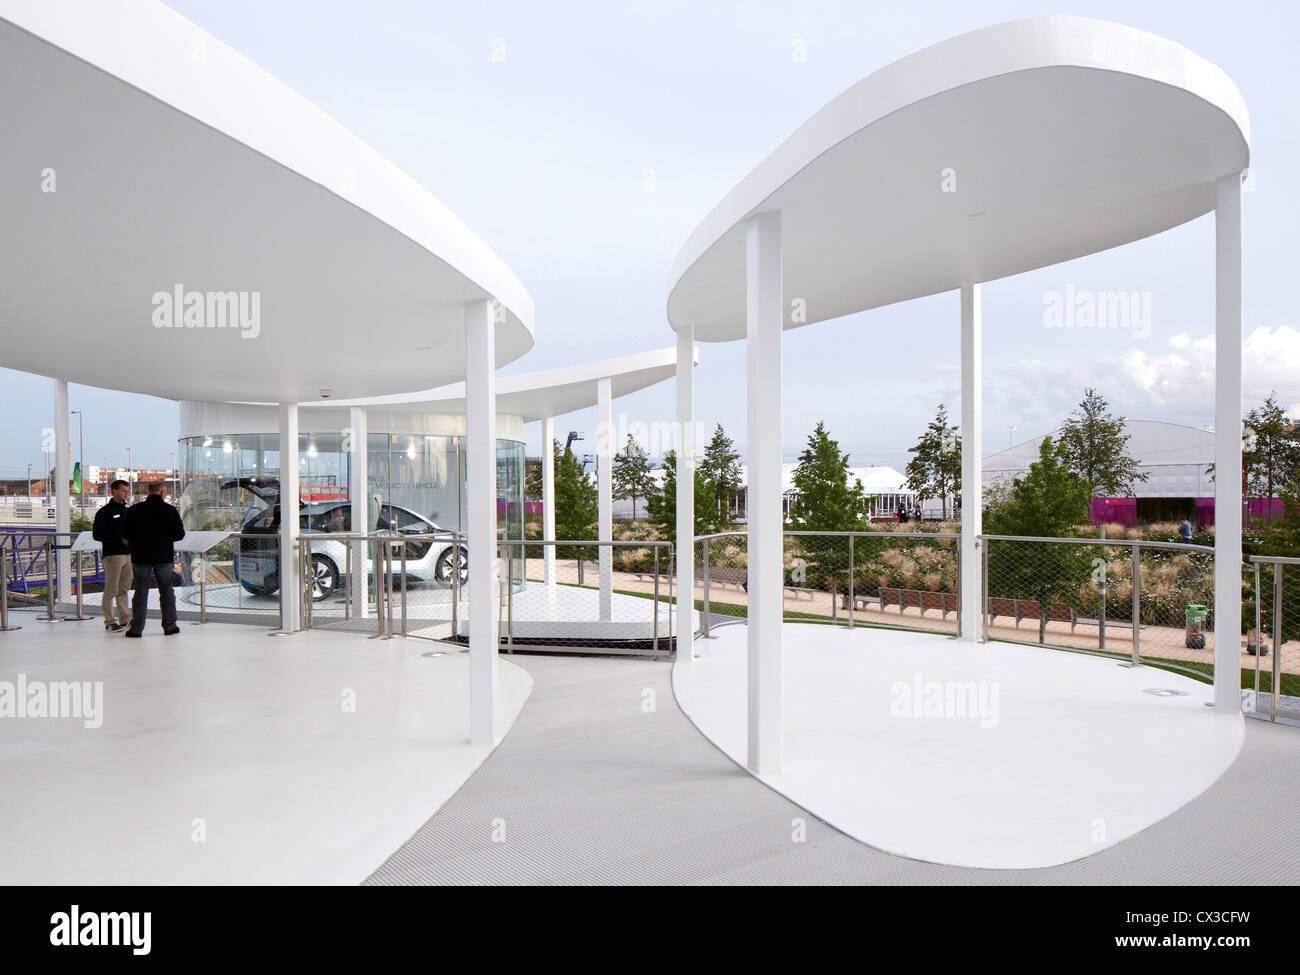 Pavillon du groupe BMW de 2012 à Londres, Londres, Royaume-Uni. Architecte : Serie architectes, 2012. Vue d'ensemble de niveau supérieur avec des voitures Banque D'Images